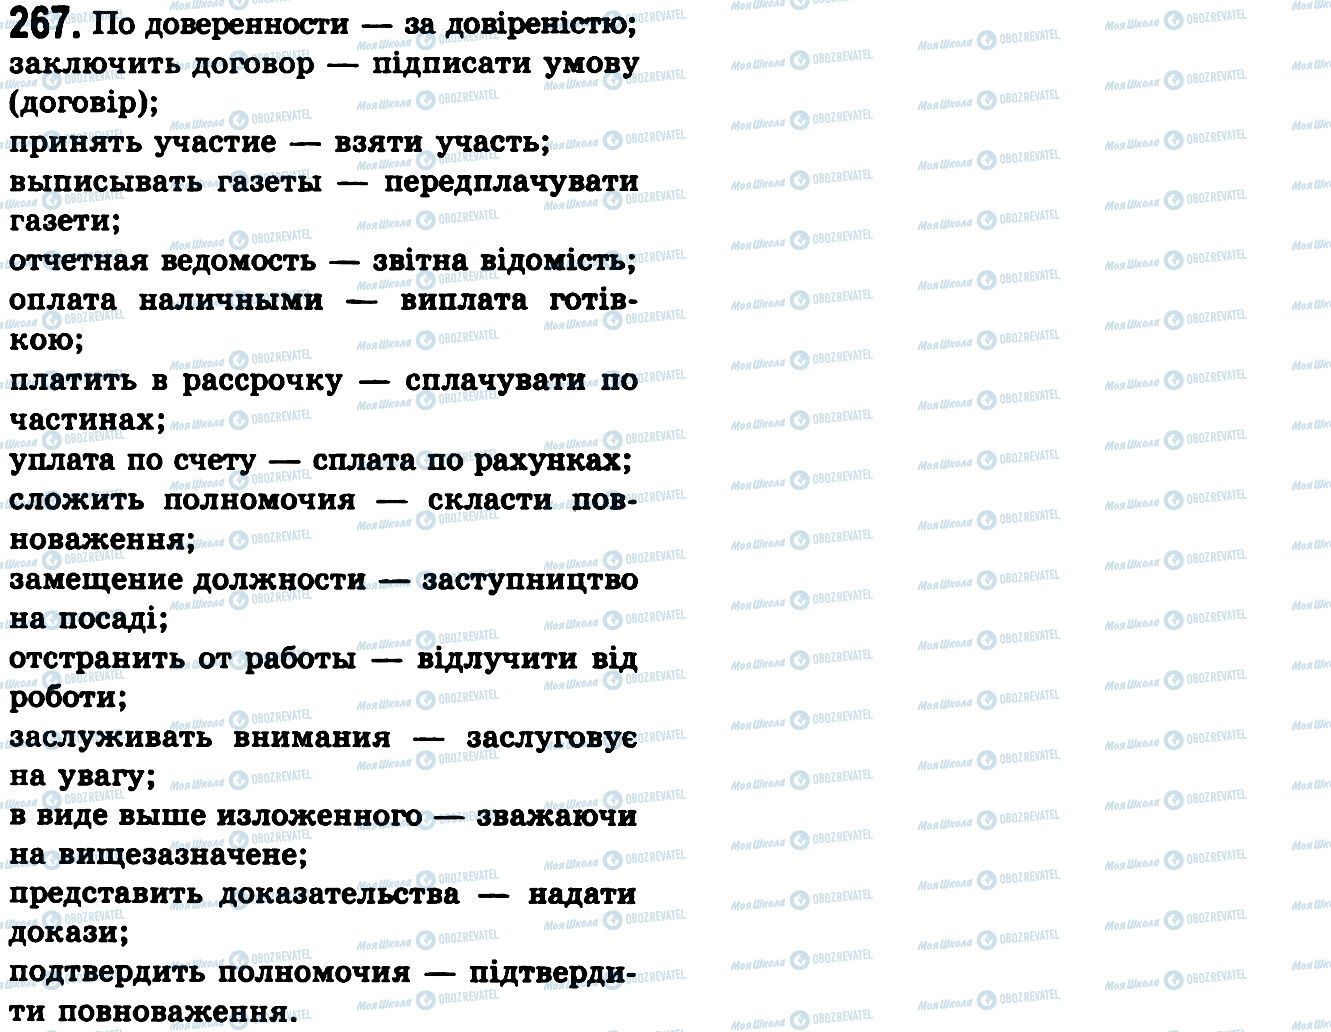 ГДЗ Українська мова 9 клас сторінка 267